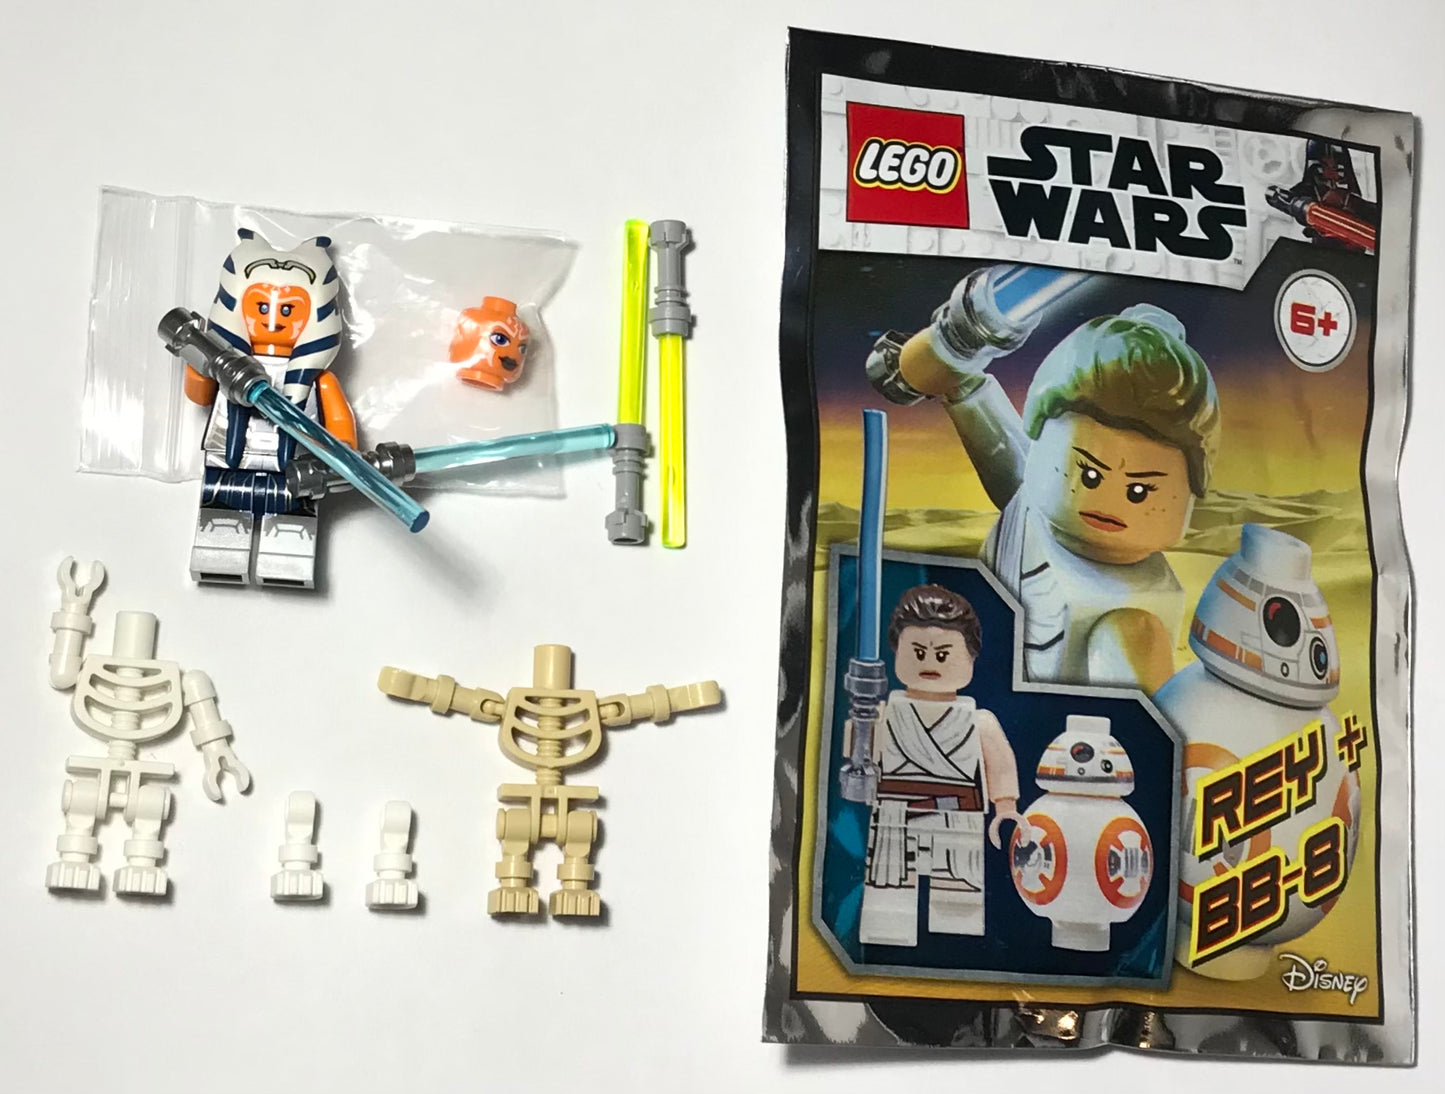 LEGO Star Wars Rey Skywalker and BB-8 Droid Minifigure Foil Pack Bag 912173 + BUNDLE/LOT